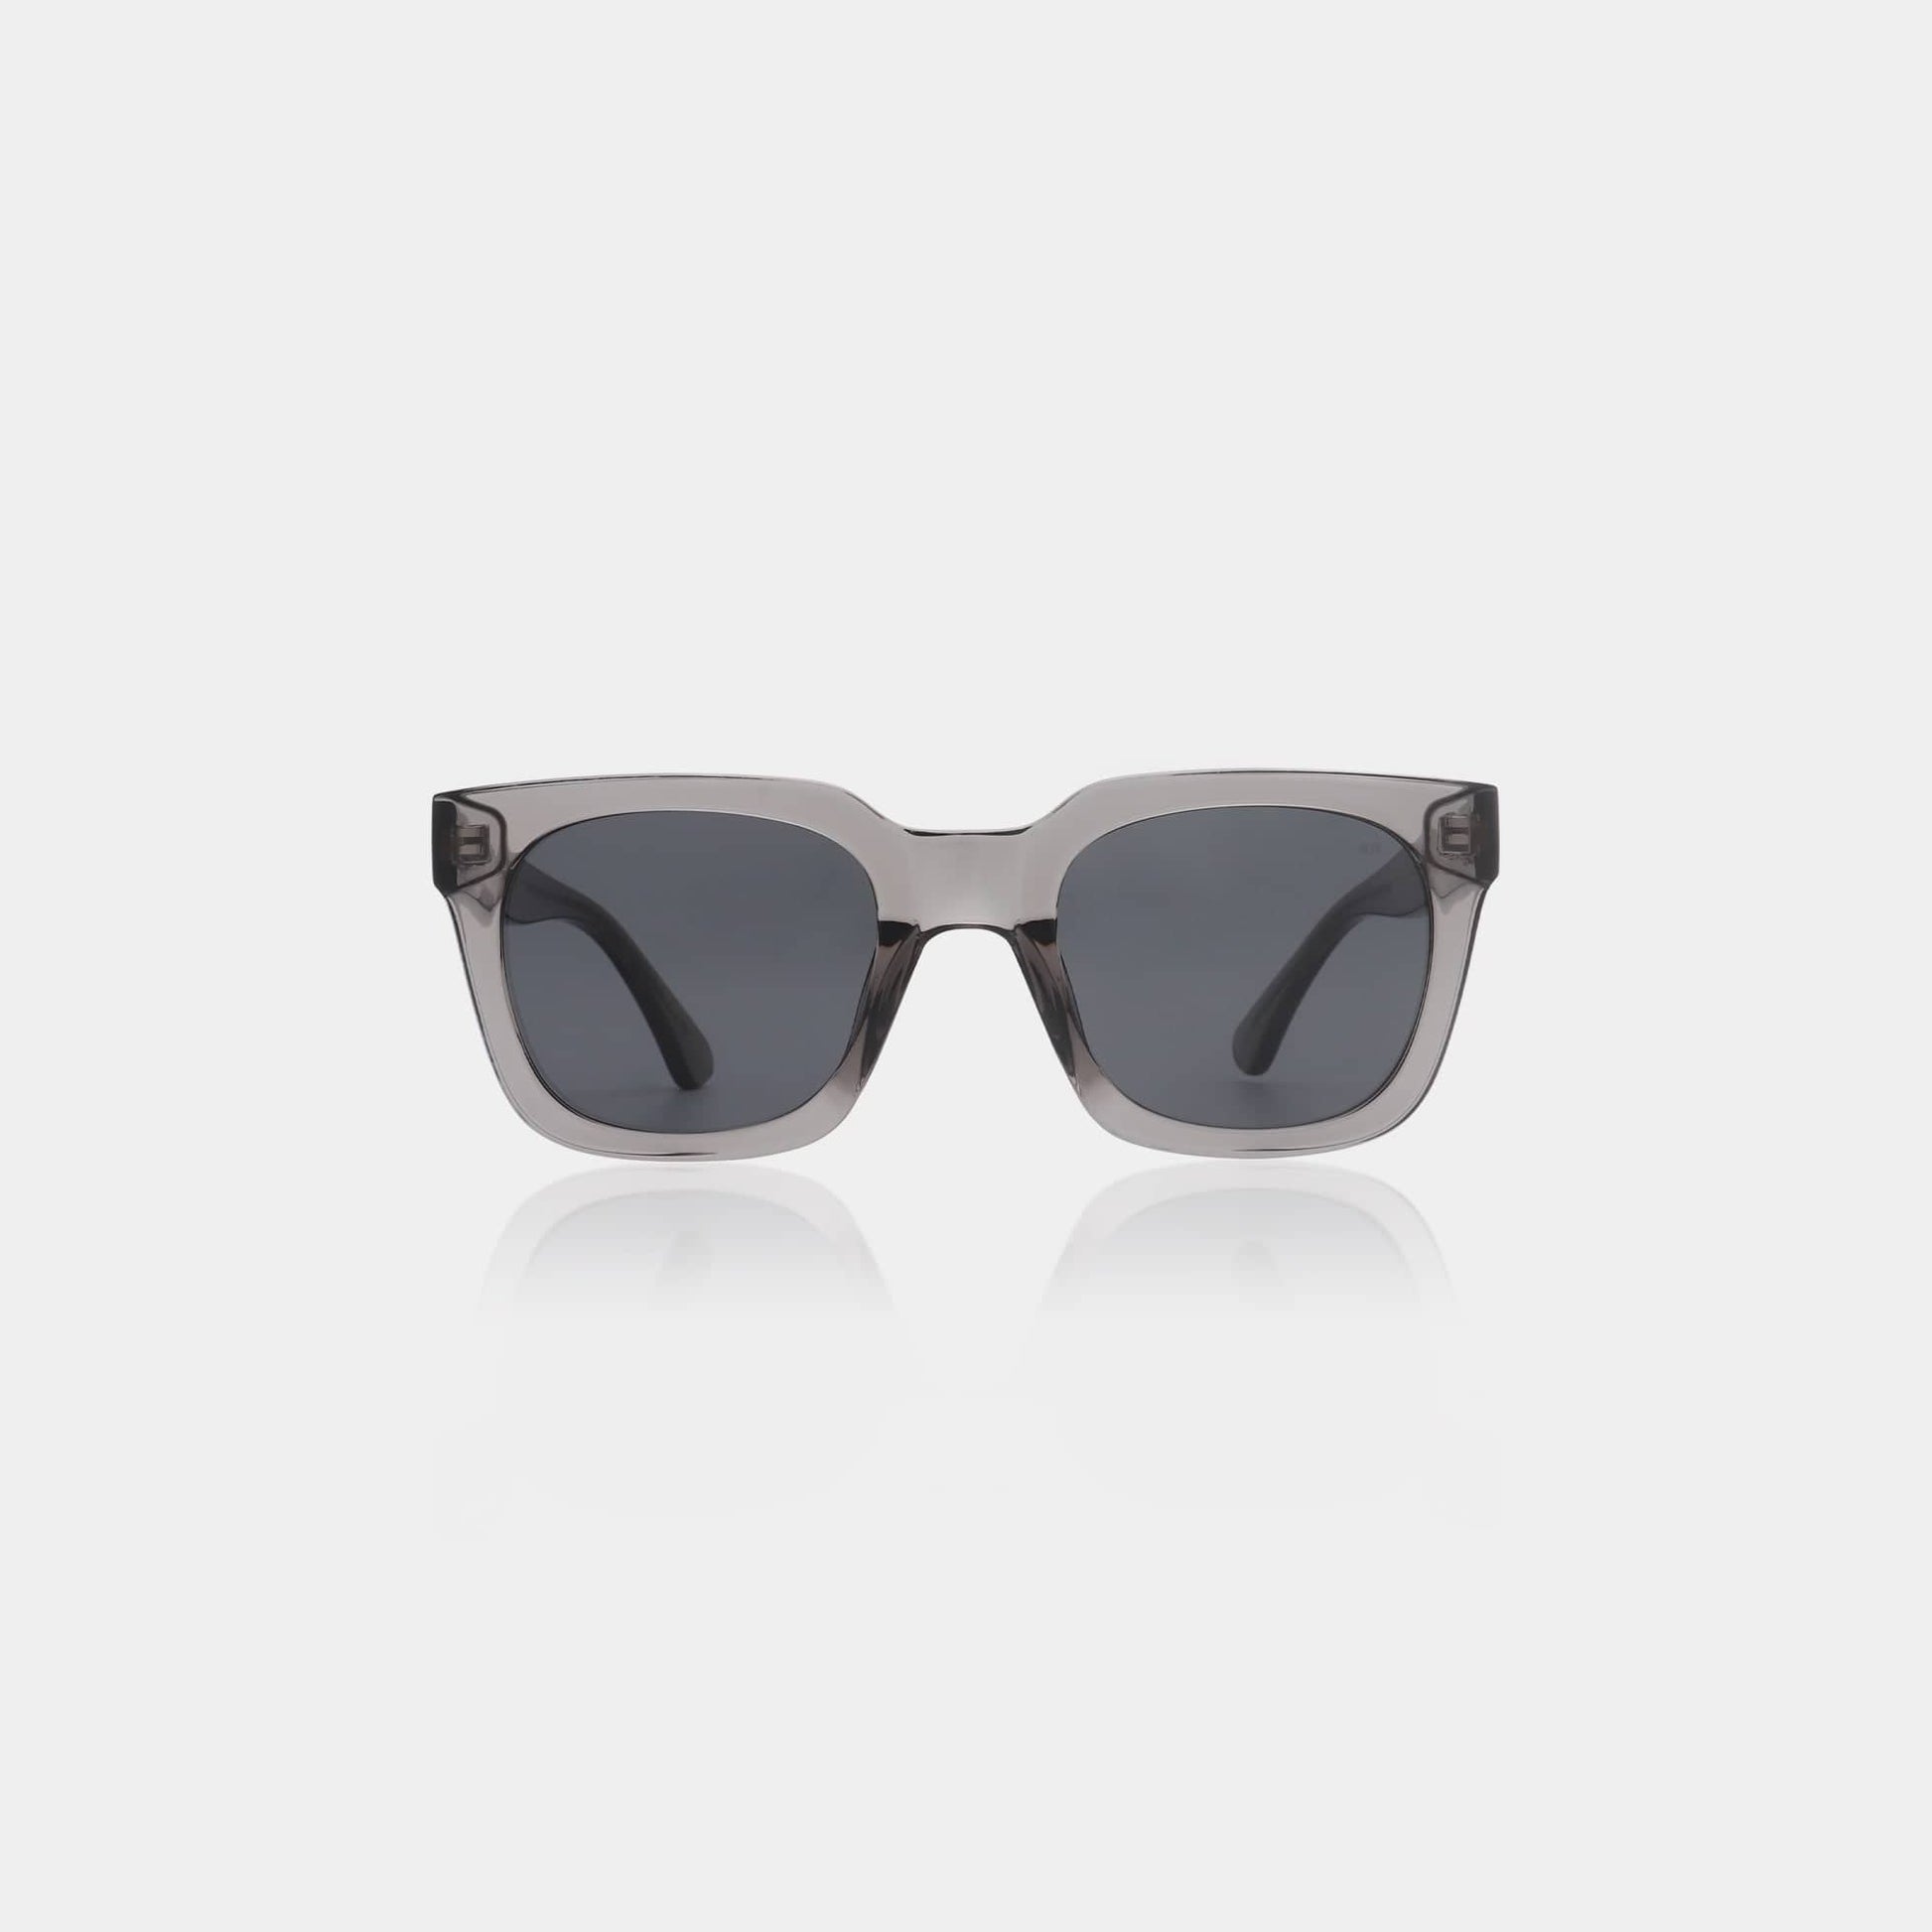 A.Kjærbede Sunglasses Nancy Coquina / Grey Transparent SUNGLASSES  - ZIGZAG Footwear